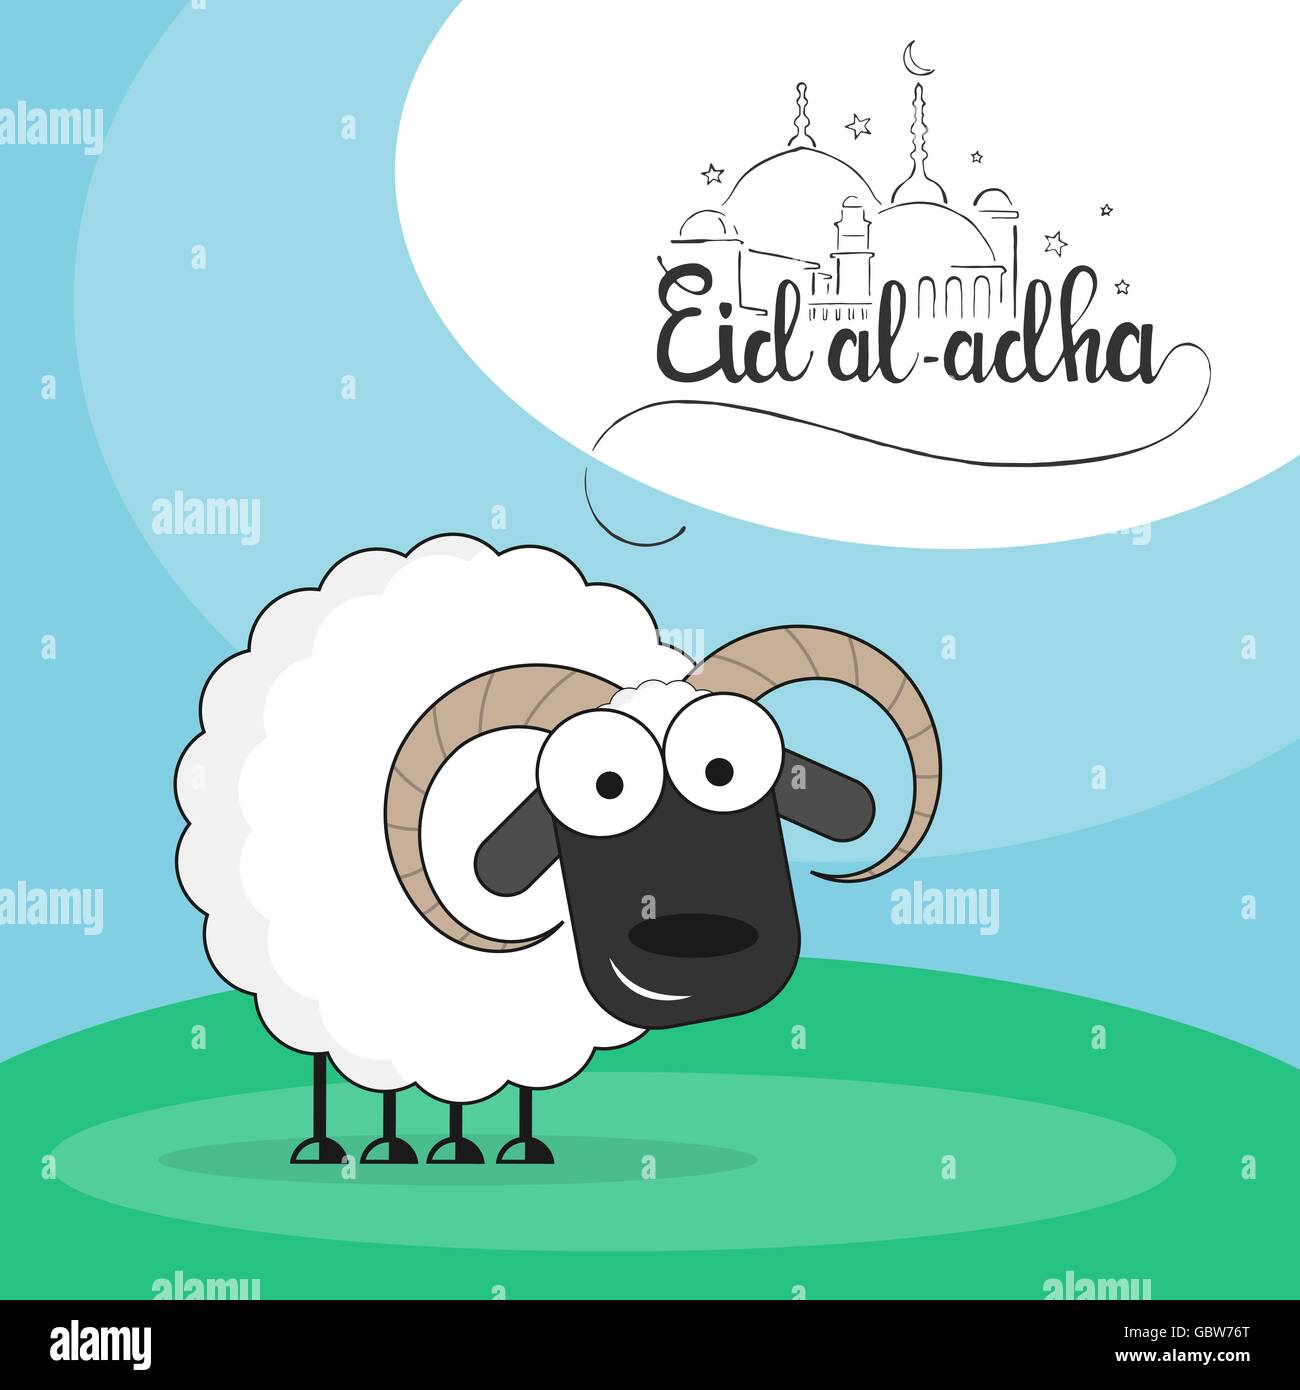 Niedlichen Schafe auf einer grünen Wiese flachen Stil Vektor-Illustration mit Eid al-Adha handschriftliche Beschriftungen fuer muslimischen Feiertag Bakr-Eid Stock Vektor